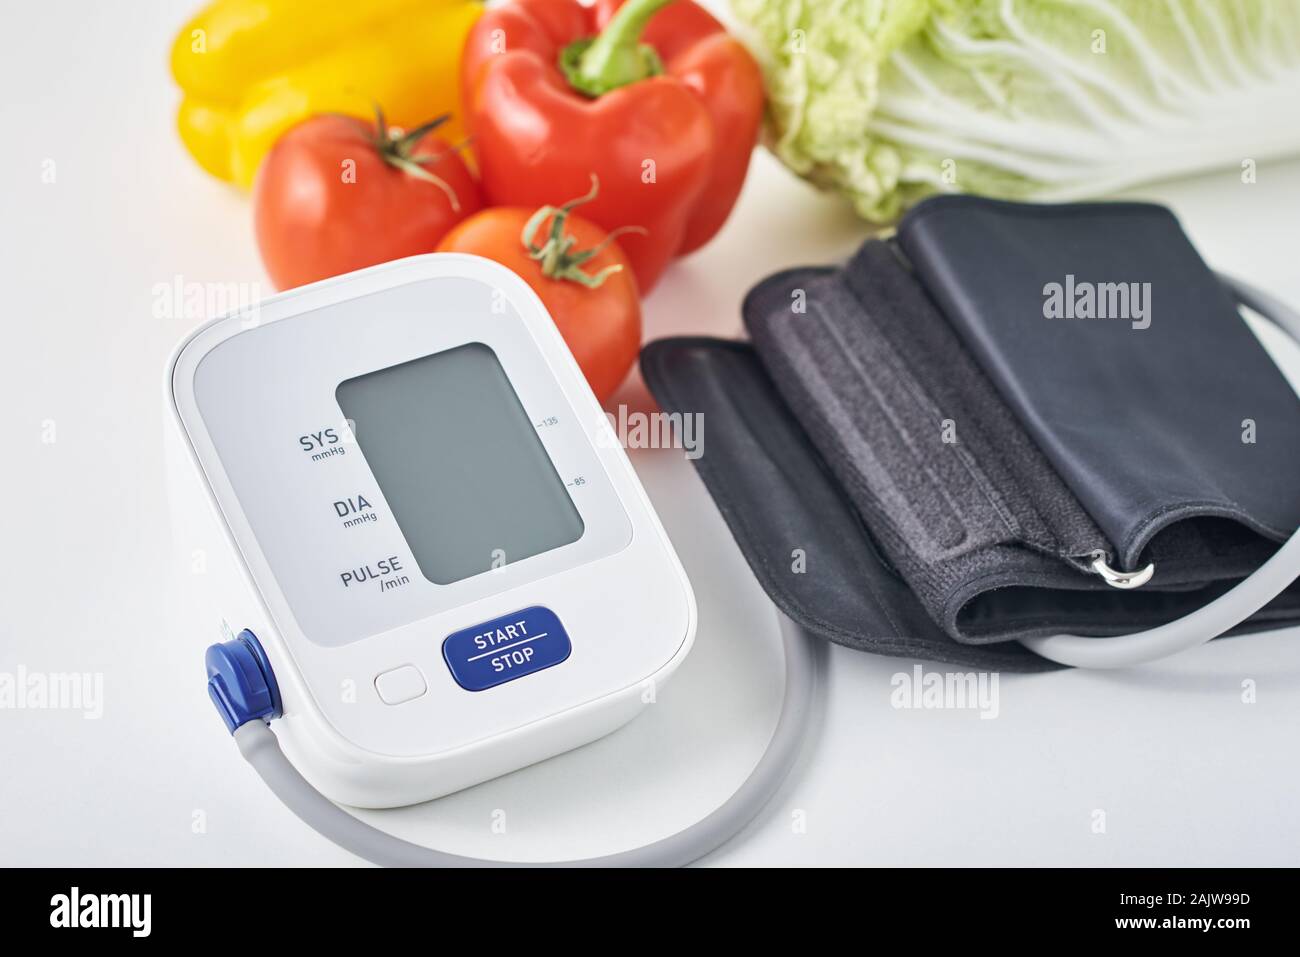 Tensiomètre numérique et des légumes frais sur la table. Concept de soins de santé Banque D'Images